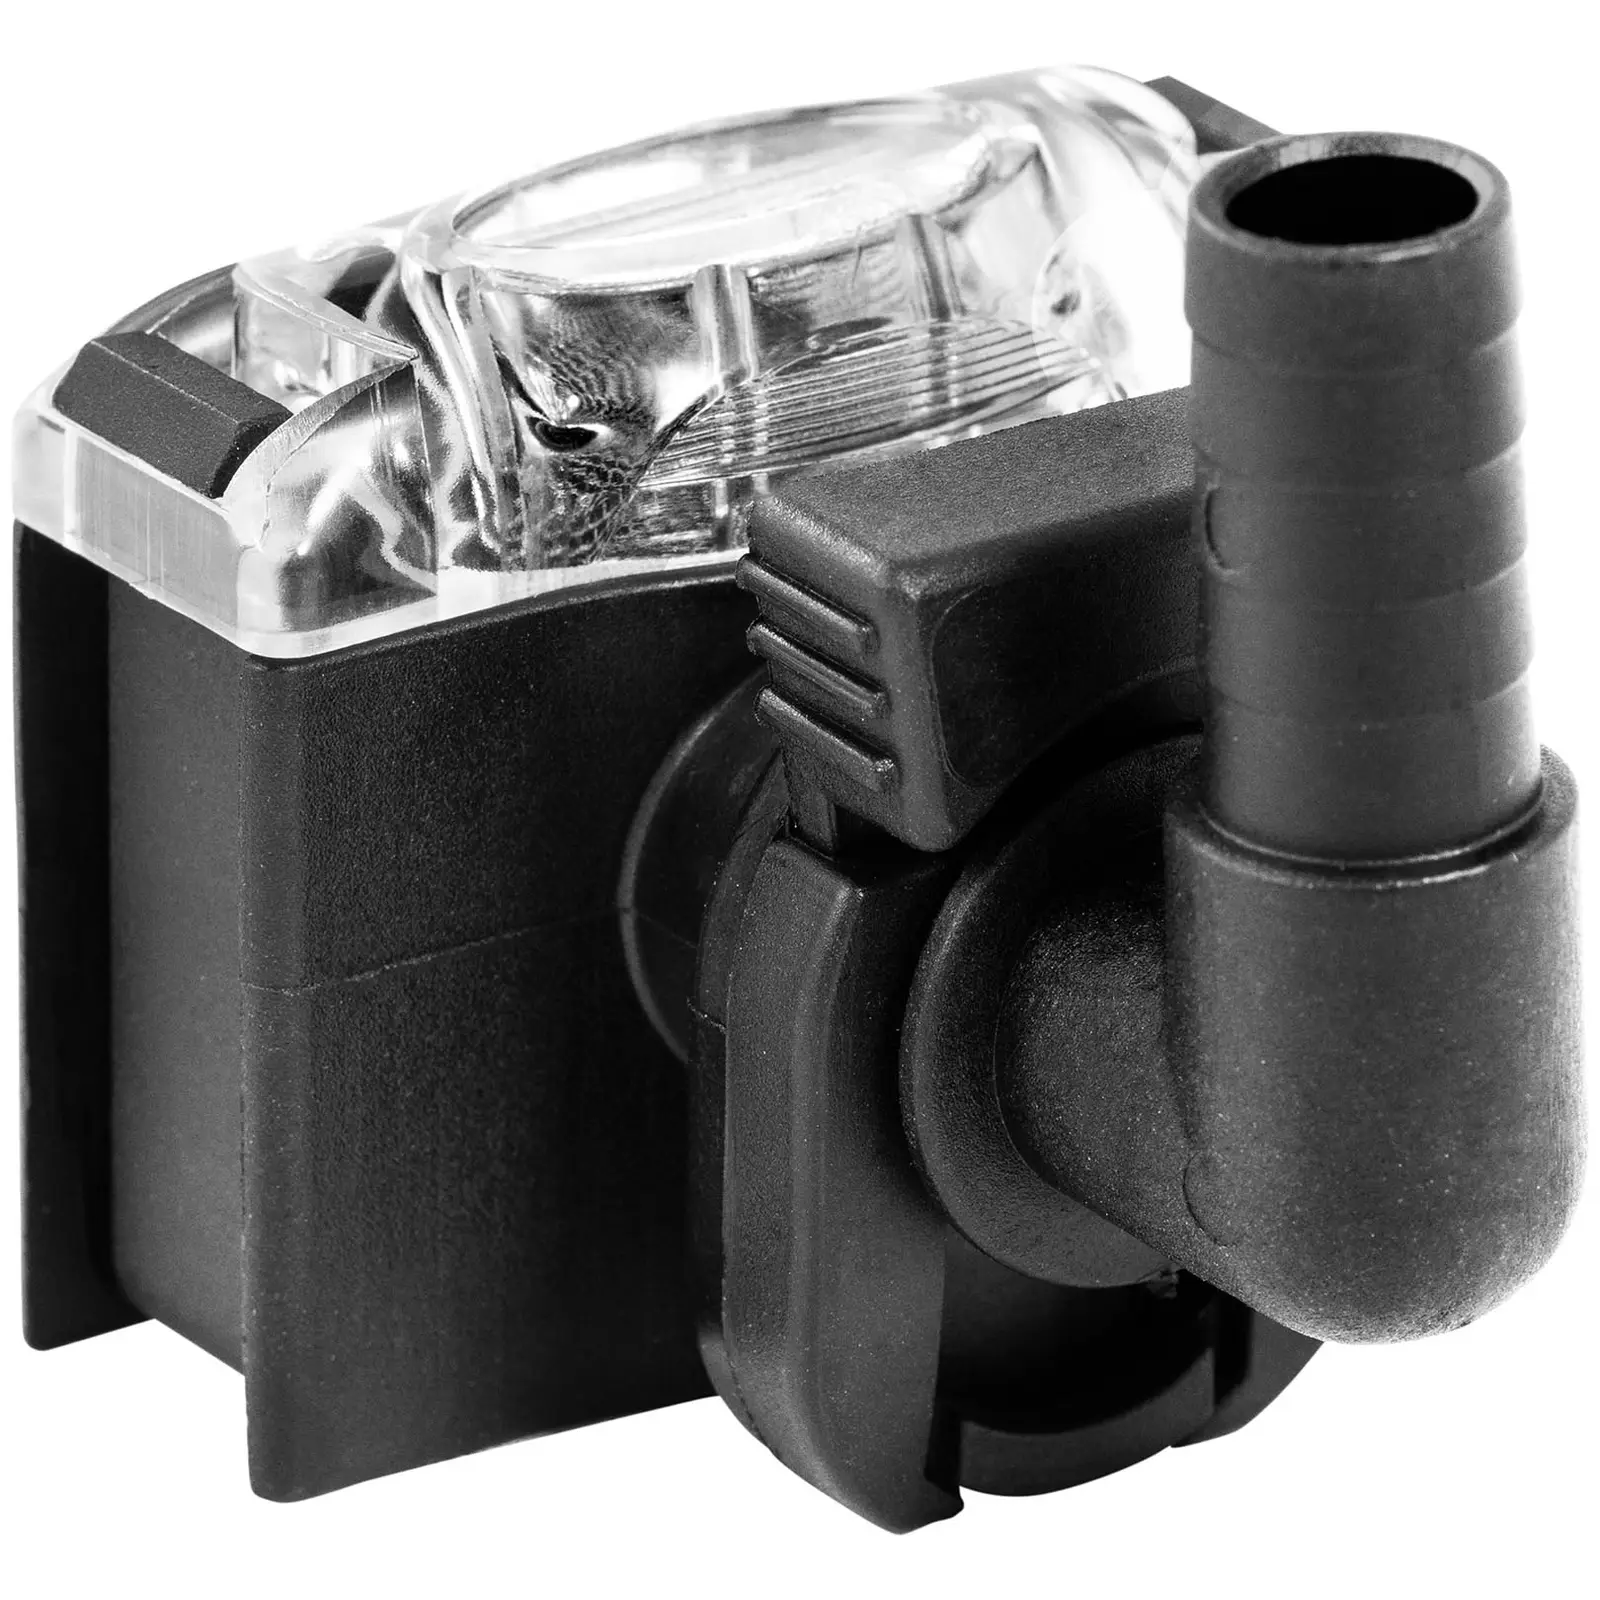 Druckwasserpumpe mit Druckschalter - 12 V - 10 l/min - max. 60 °C - 1,2 bar